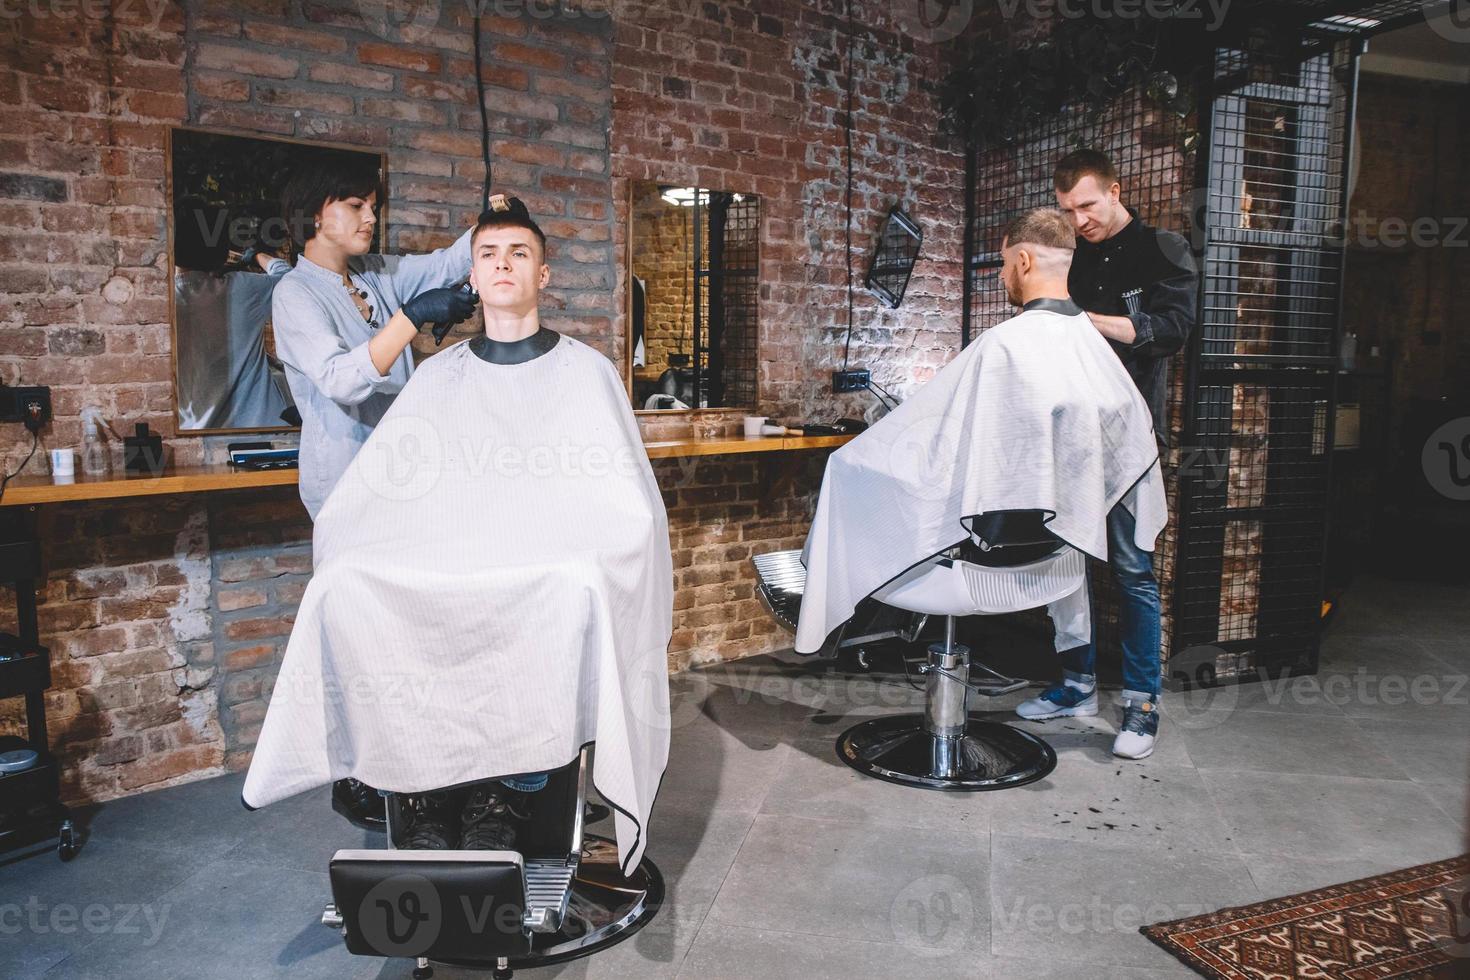 les coiffeurs coupent leurs clients dans un salon de coiffure. concept de publicité et de salon de coiffure photo